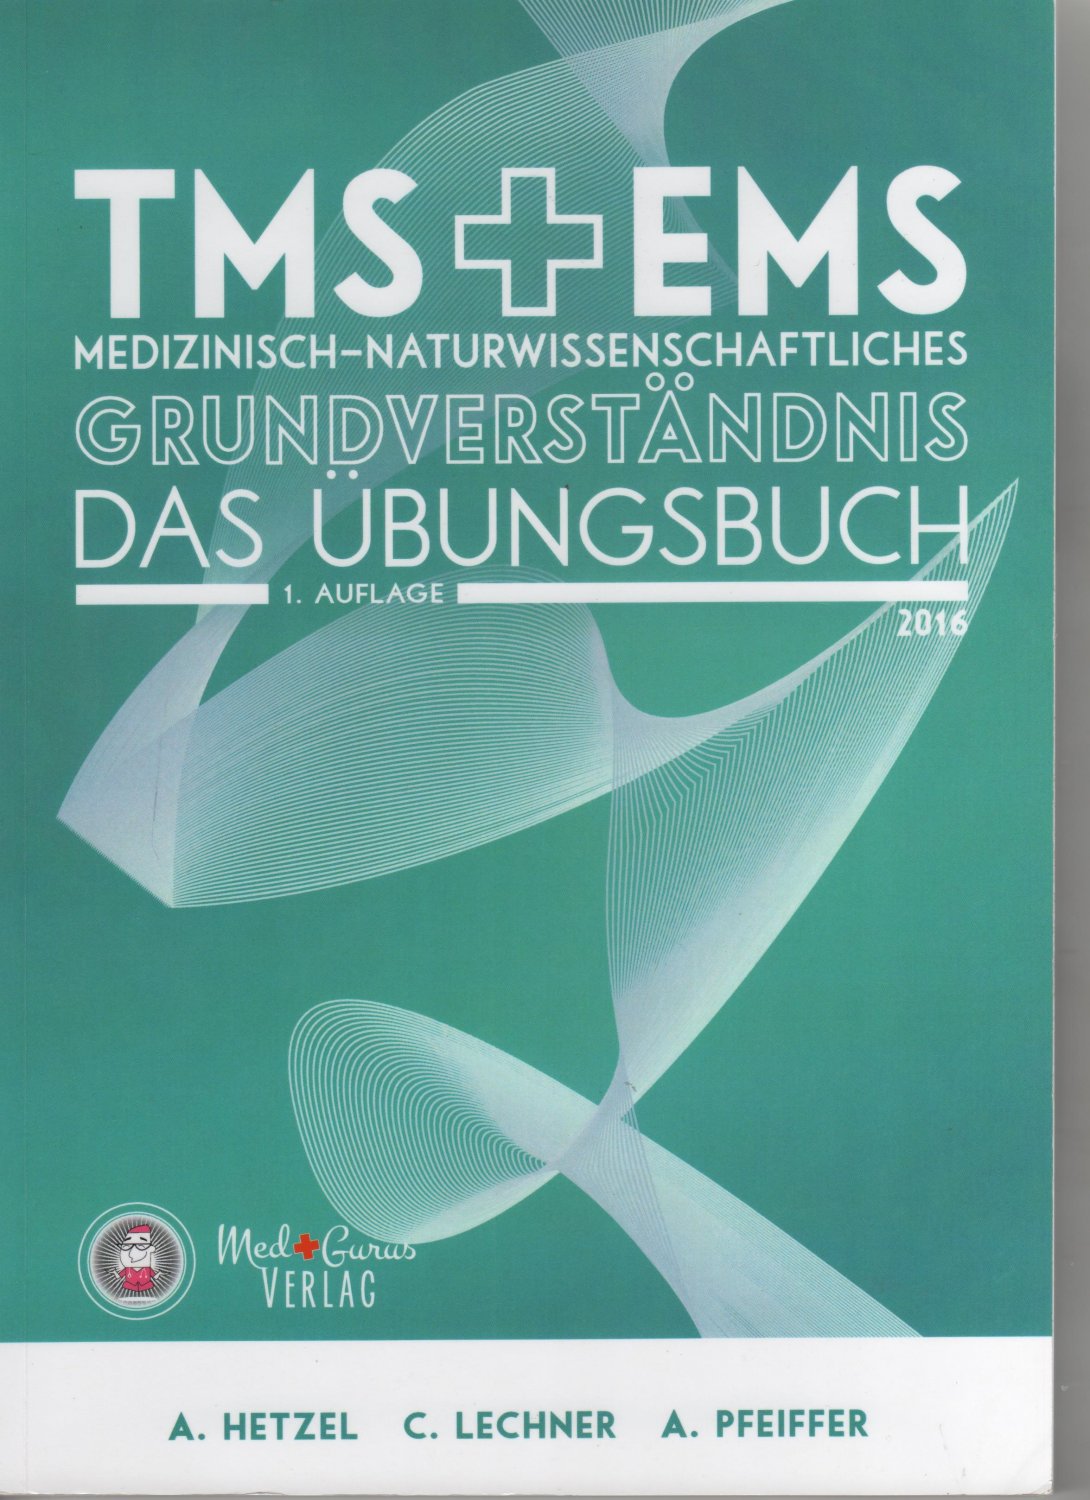 Test für Medizinische Studiengänge und Eignungstest für das Medizinstudium  III: Originalversion III des TMS/EMS